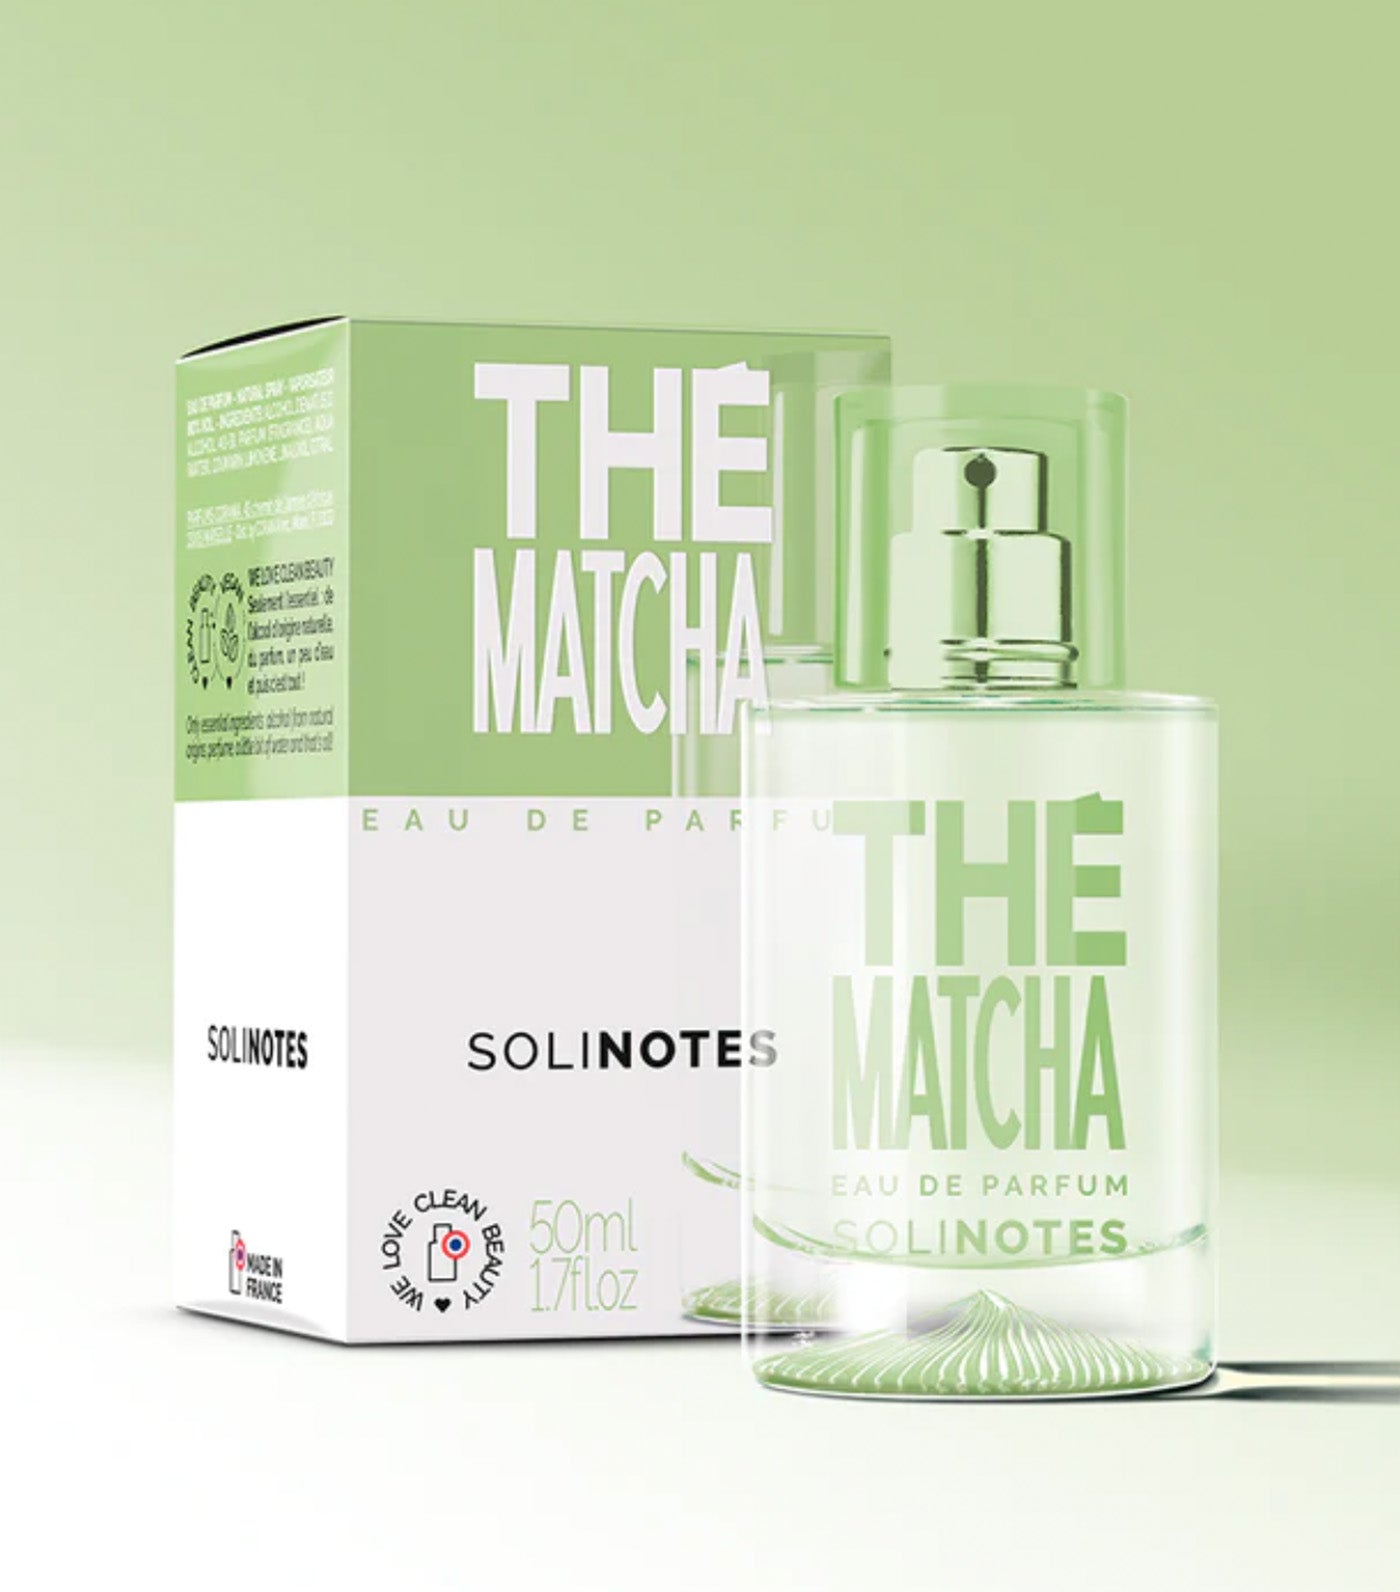 The Matcha Eau de Parfum